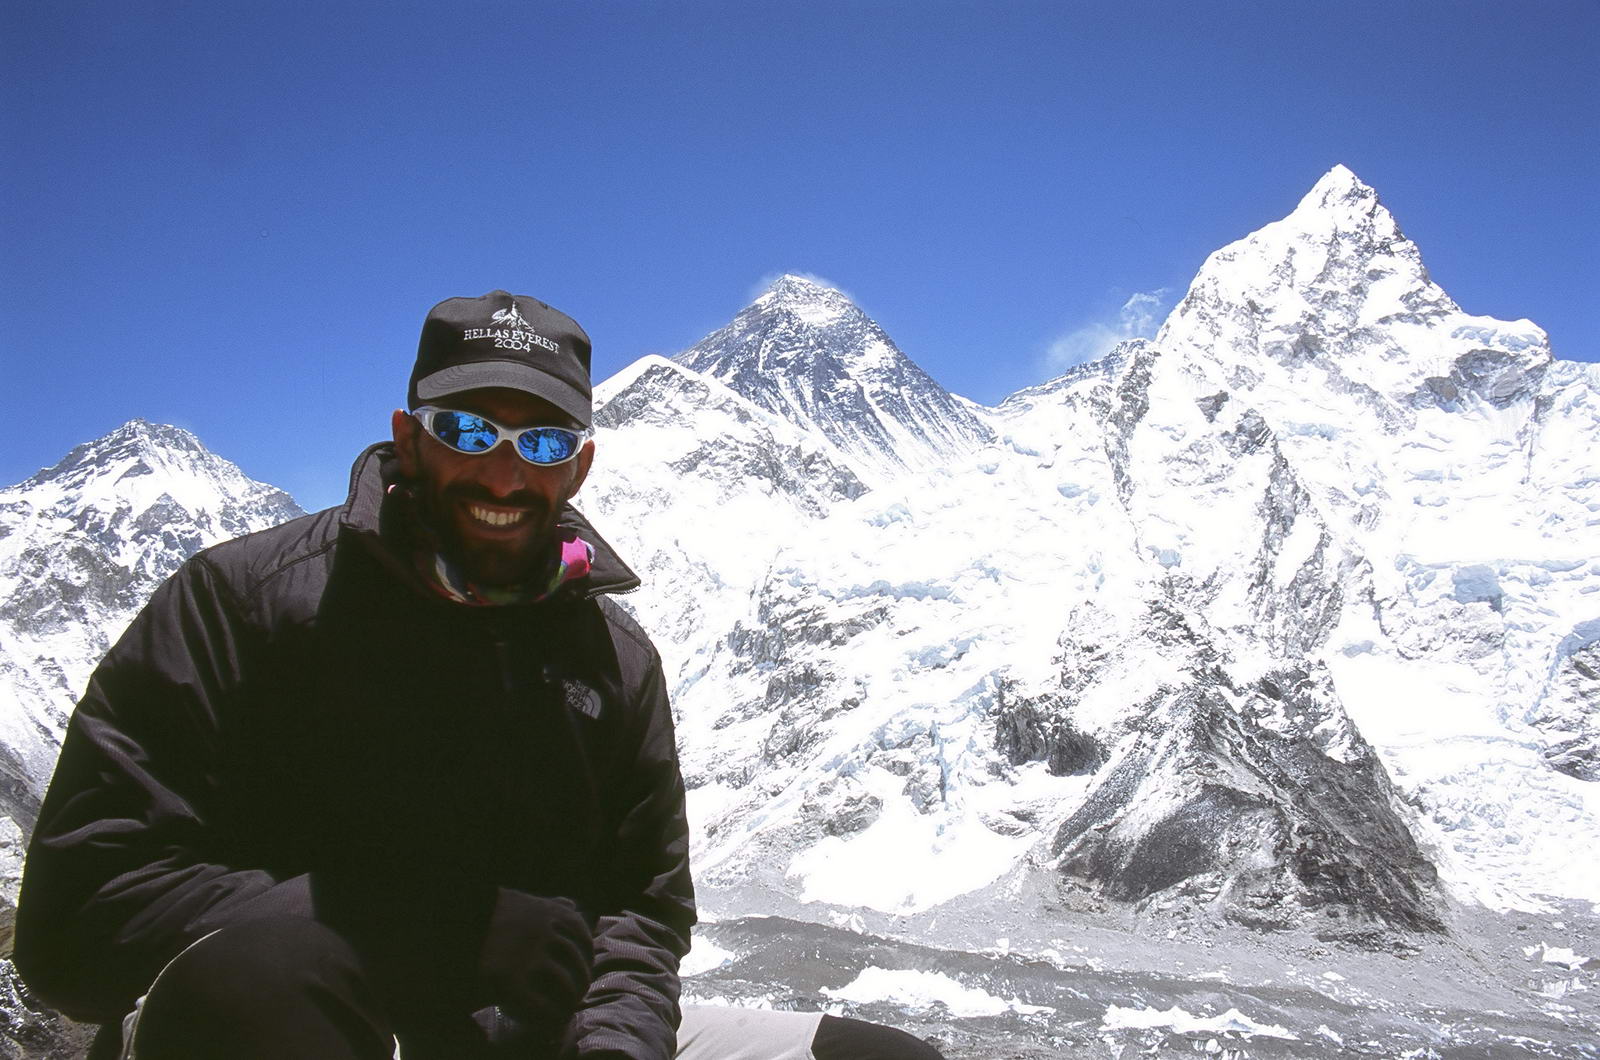 Παναγιώτης Κοτρωνάρος: Ο Έλληνας που ''έντυσε" στα γαλανόλευκα το Everest